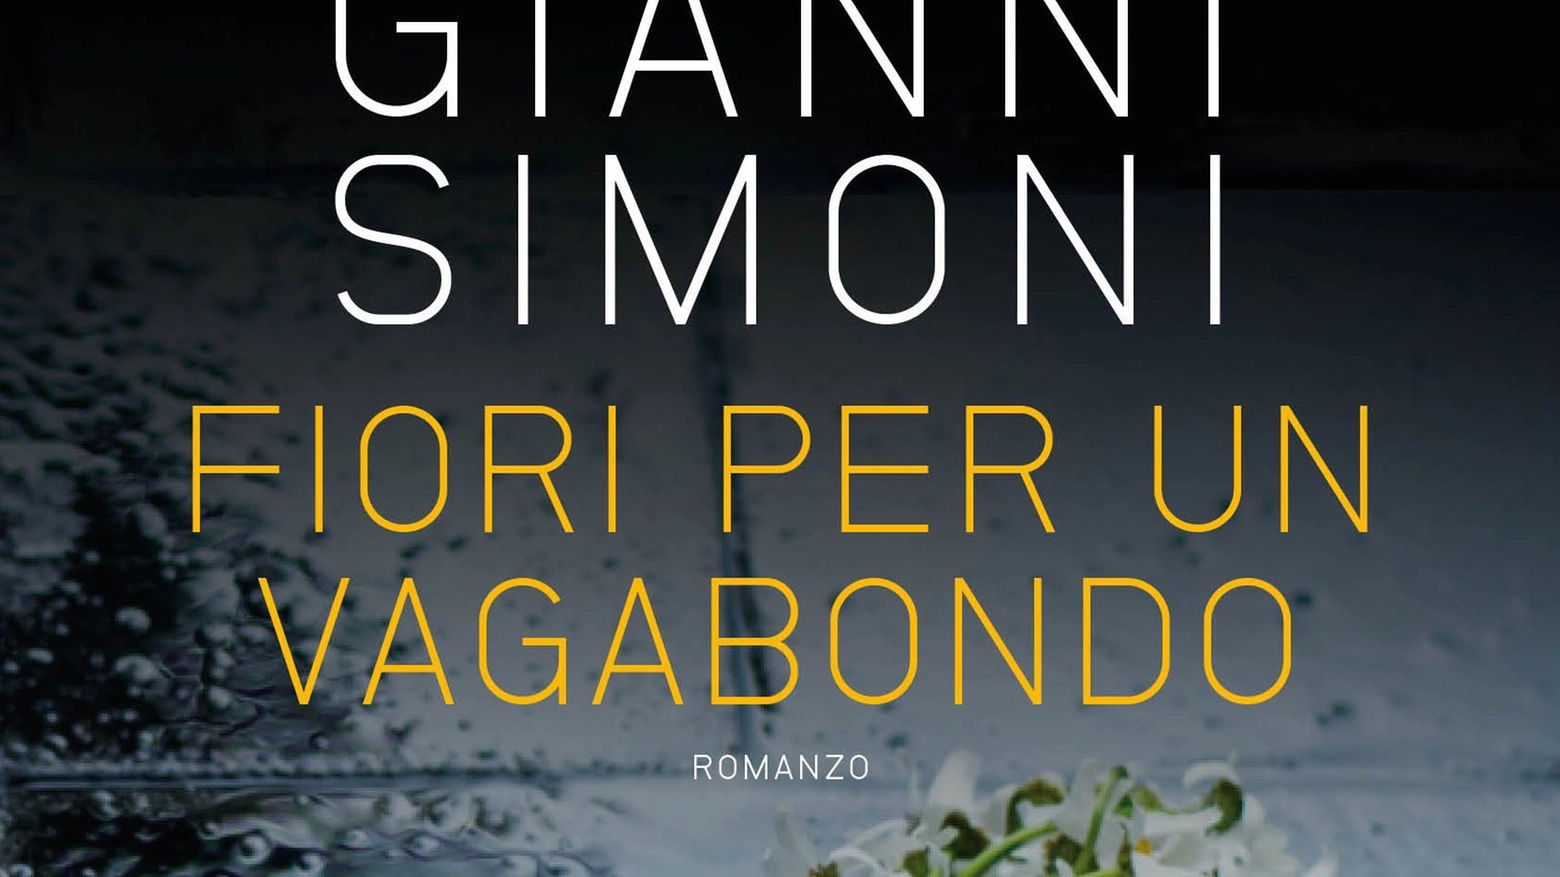 La cover di Fiori per un vagabondo, ultimo libro di Gianni Simoni